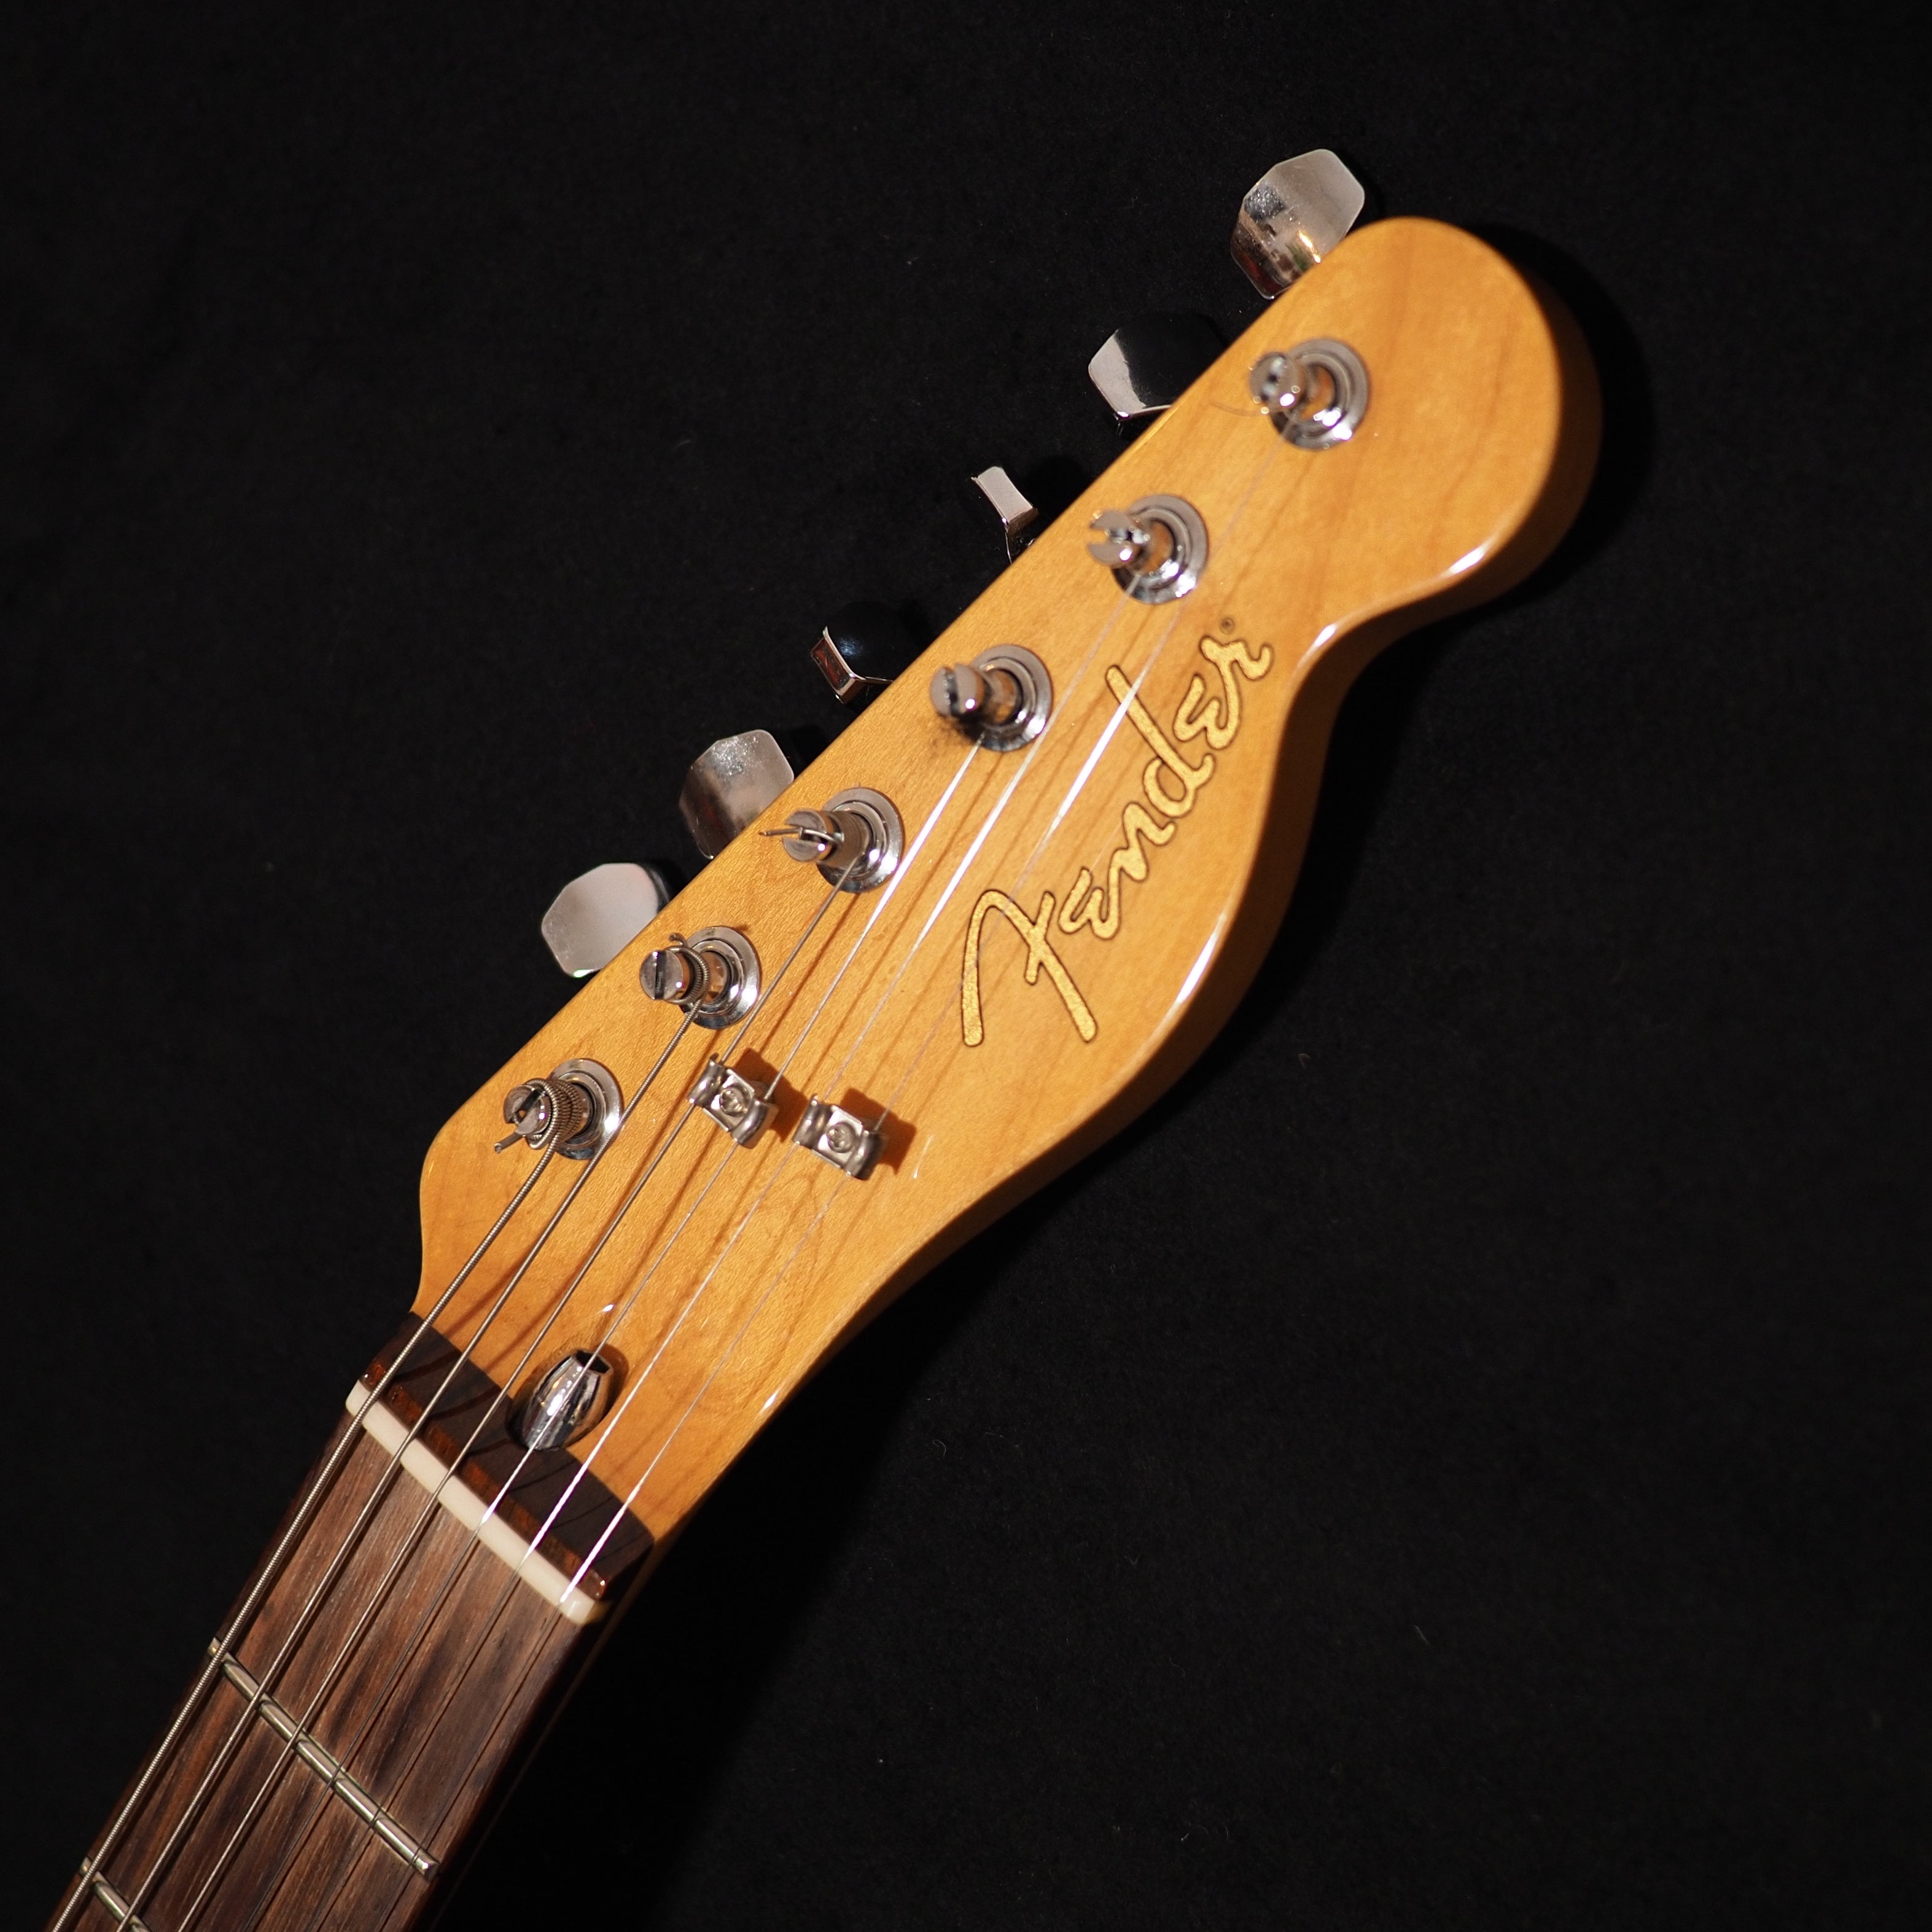 Fender Japan Pawn Shop 72 in Sea Foam Green - wurst.guitars